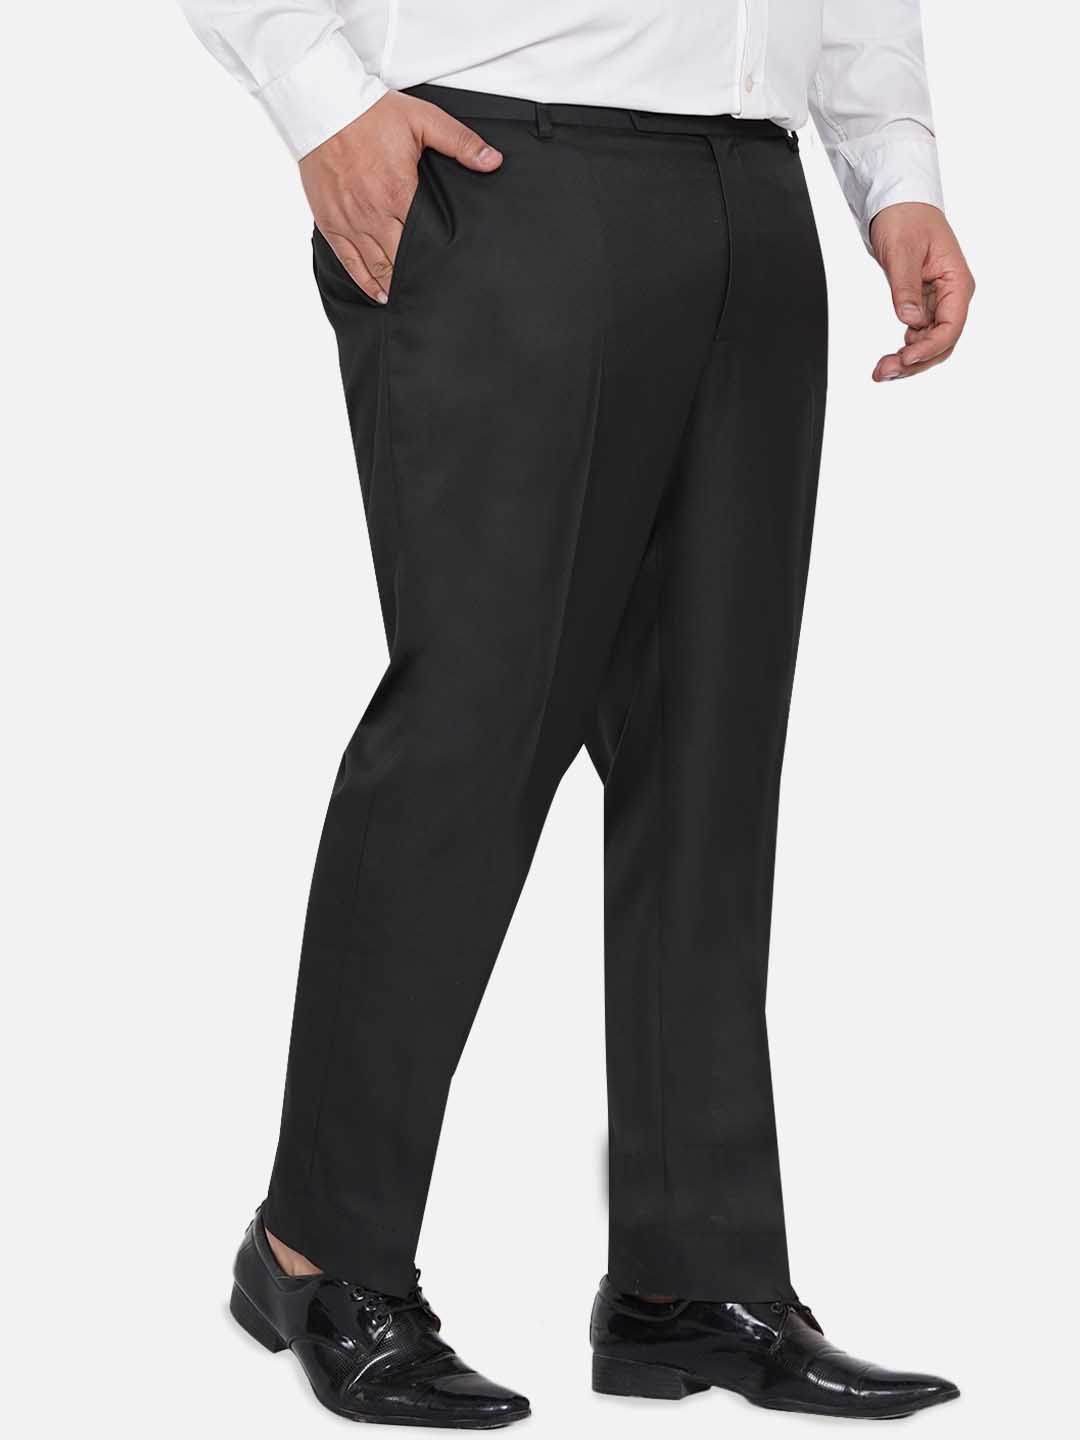 bottomwear/trousers/JPTR22010A/jptr22010a-3.jpg